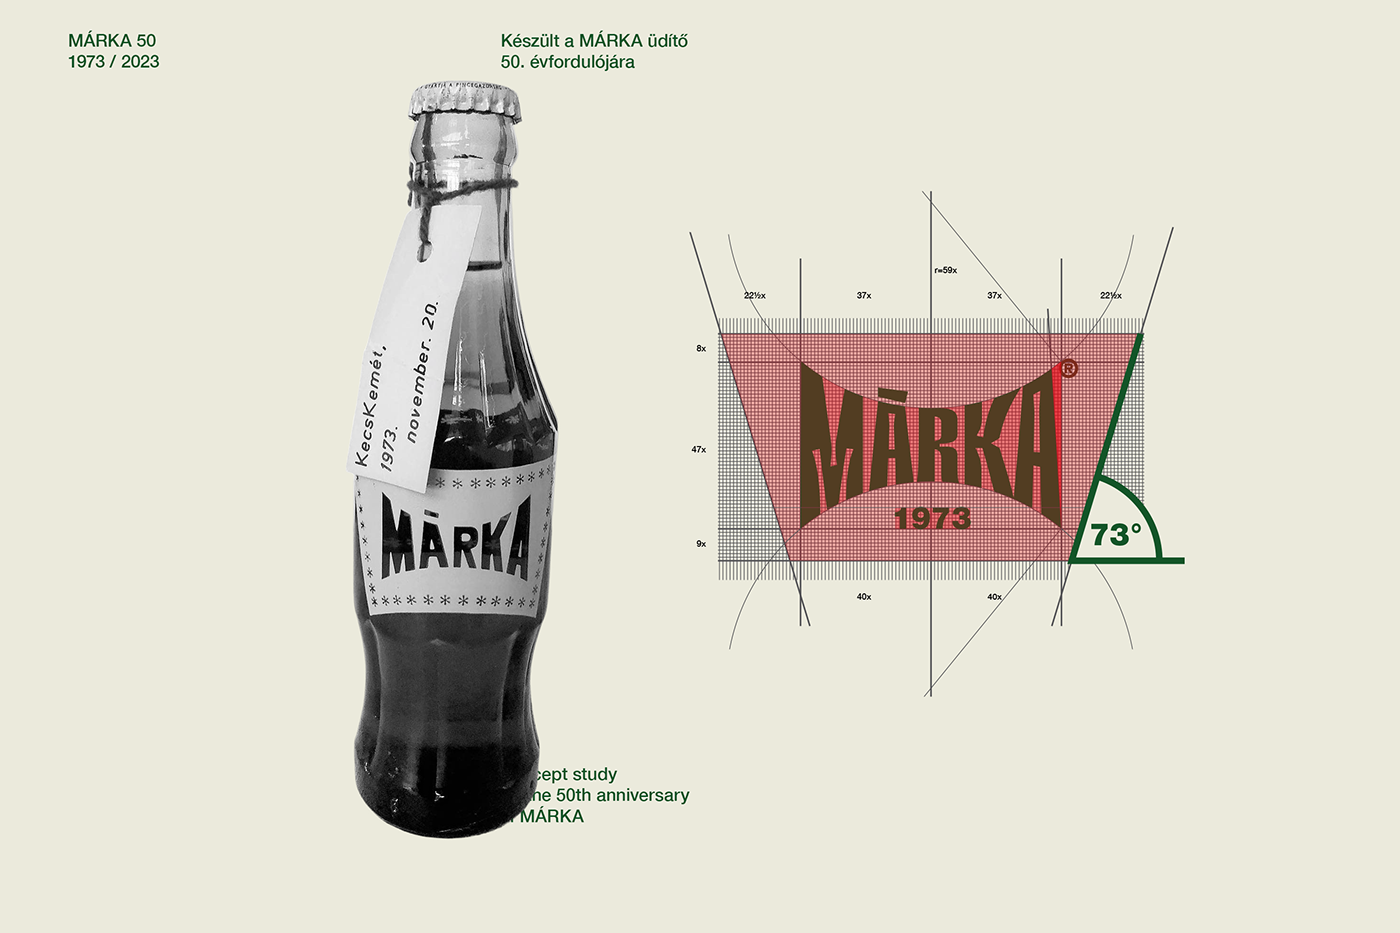 soft drink redesign soda brand identity Logo Design freshness fruits Renewal soda bottle Soda Branding